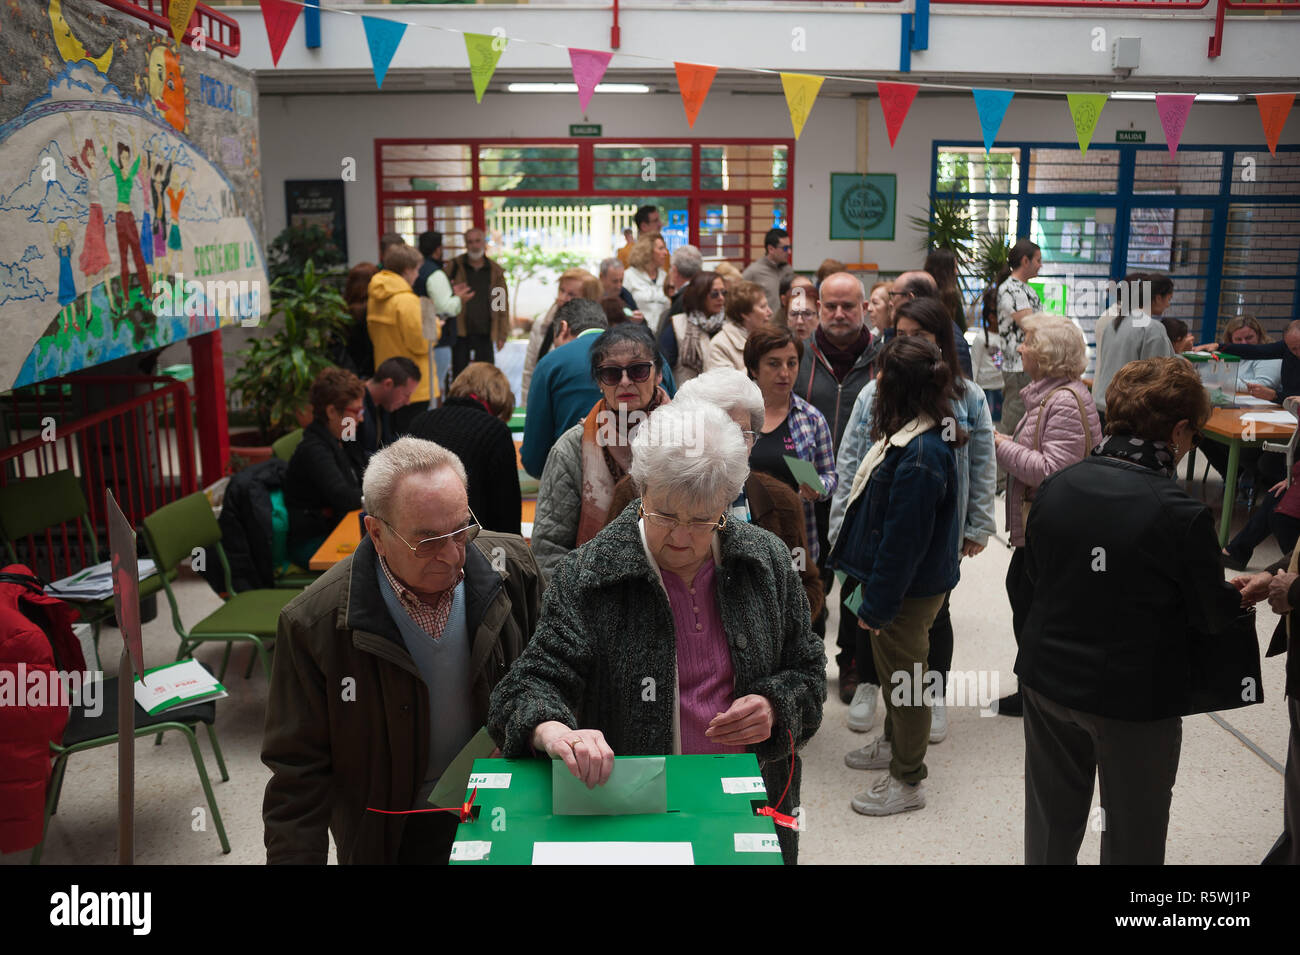 Une femme âgée est vu son casting voter à un bureau de vote pendant les élections régionales en Andalousie. Le vote en Andalousie, marquée par l'essor du parti de droite radicale espagnol VOX et son éventuelle entrée dans l'Andalousie avec le Parlement selon les derniers sondages, supposons que le premier test qui déterminera l'évolution future de la politique espagnole pour les élections générales en Espagne. Banque D'Images